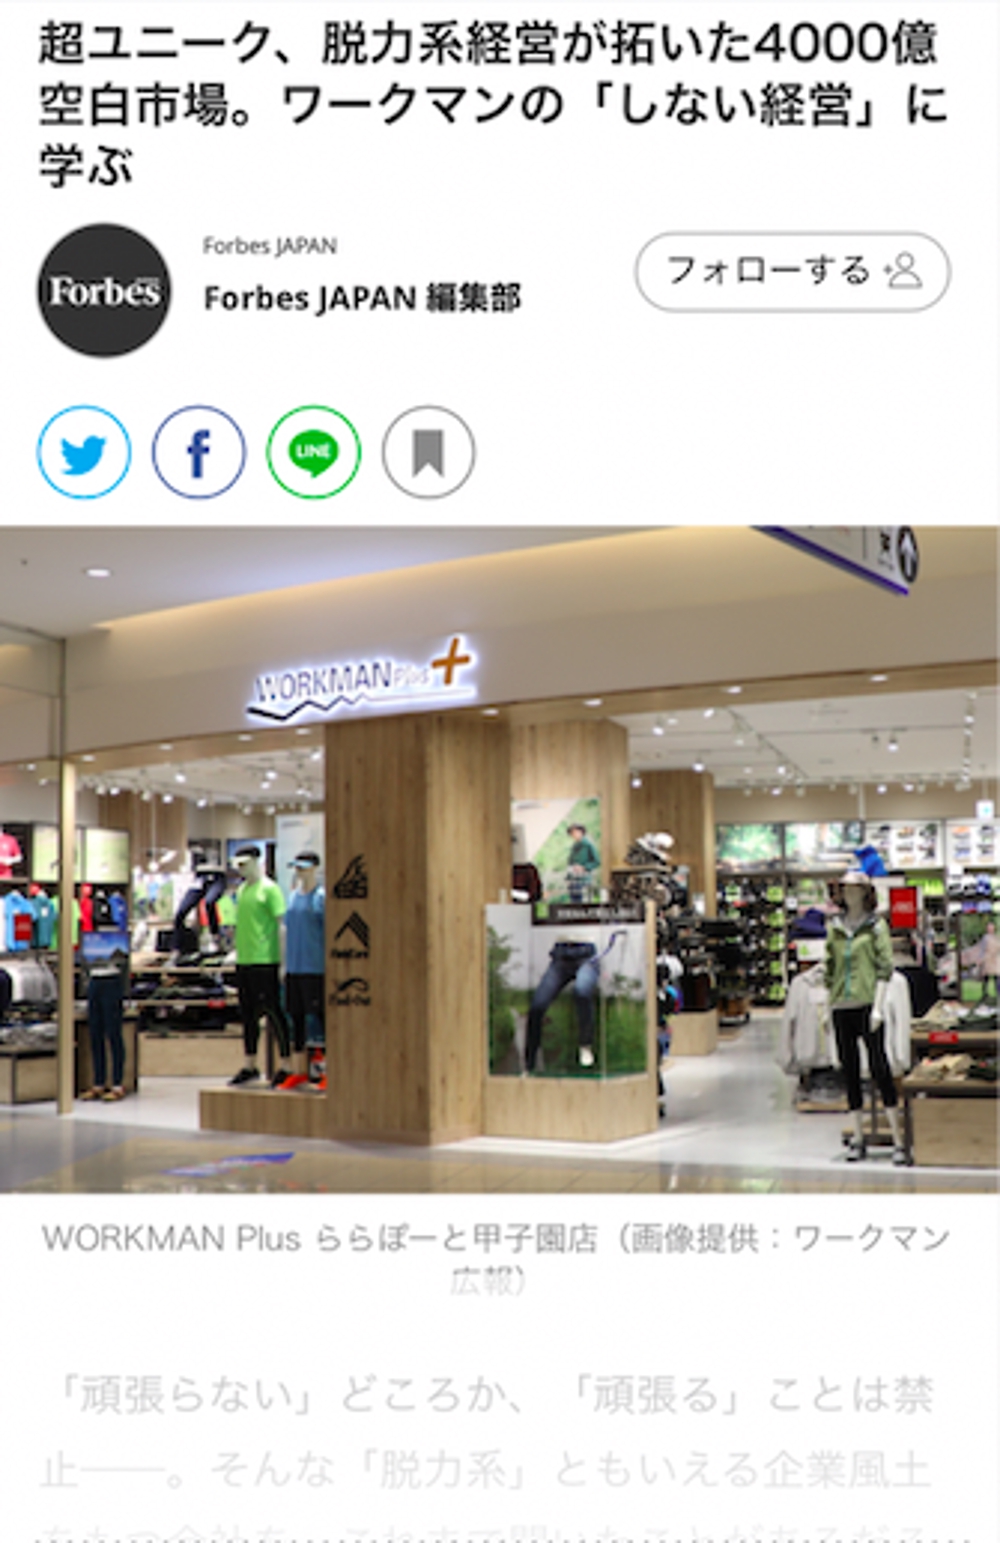 【Forbes JAPAN】ワークマン専務に取材、記事執筆